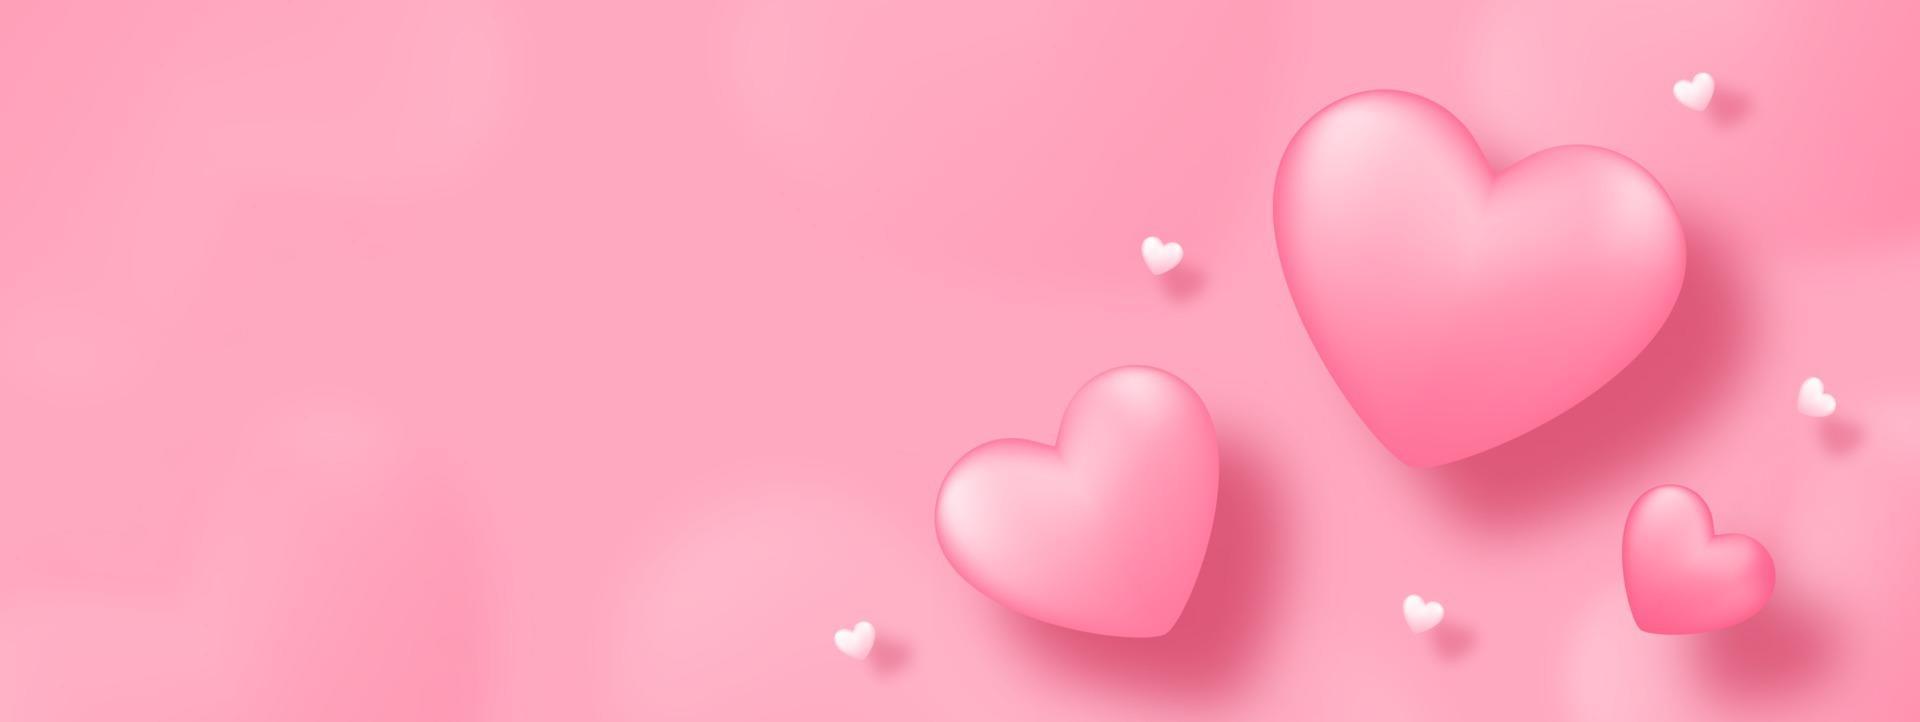 papierkunst met hart op roze achtergrond. hou van conceptontwerp voor gelukkige moederdag, valentijnsdag, verjaardagsdag. banner en groet sjabloonontwerp. vector